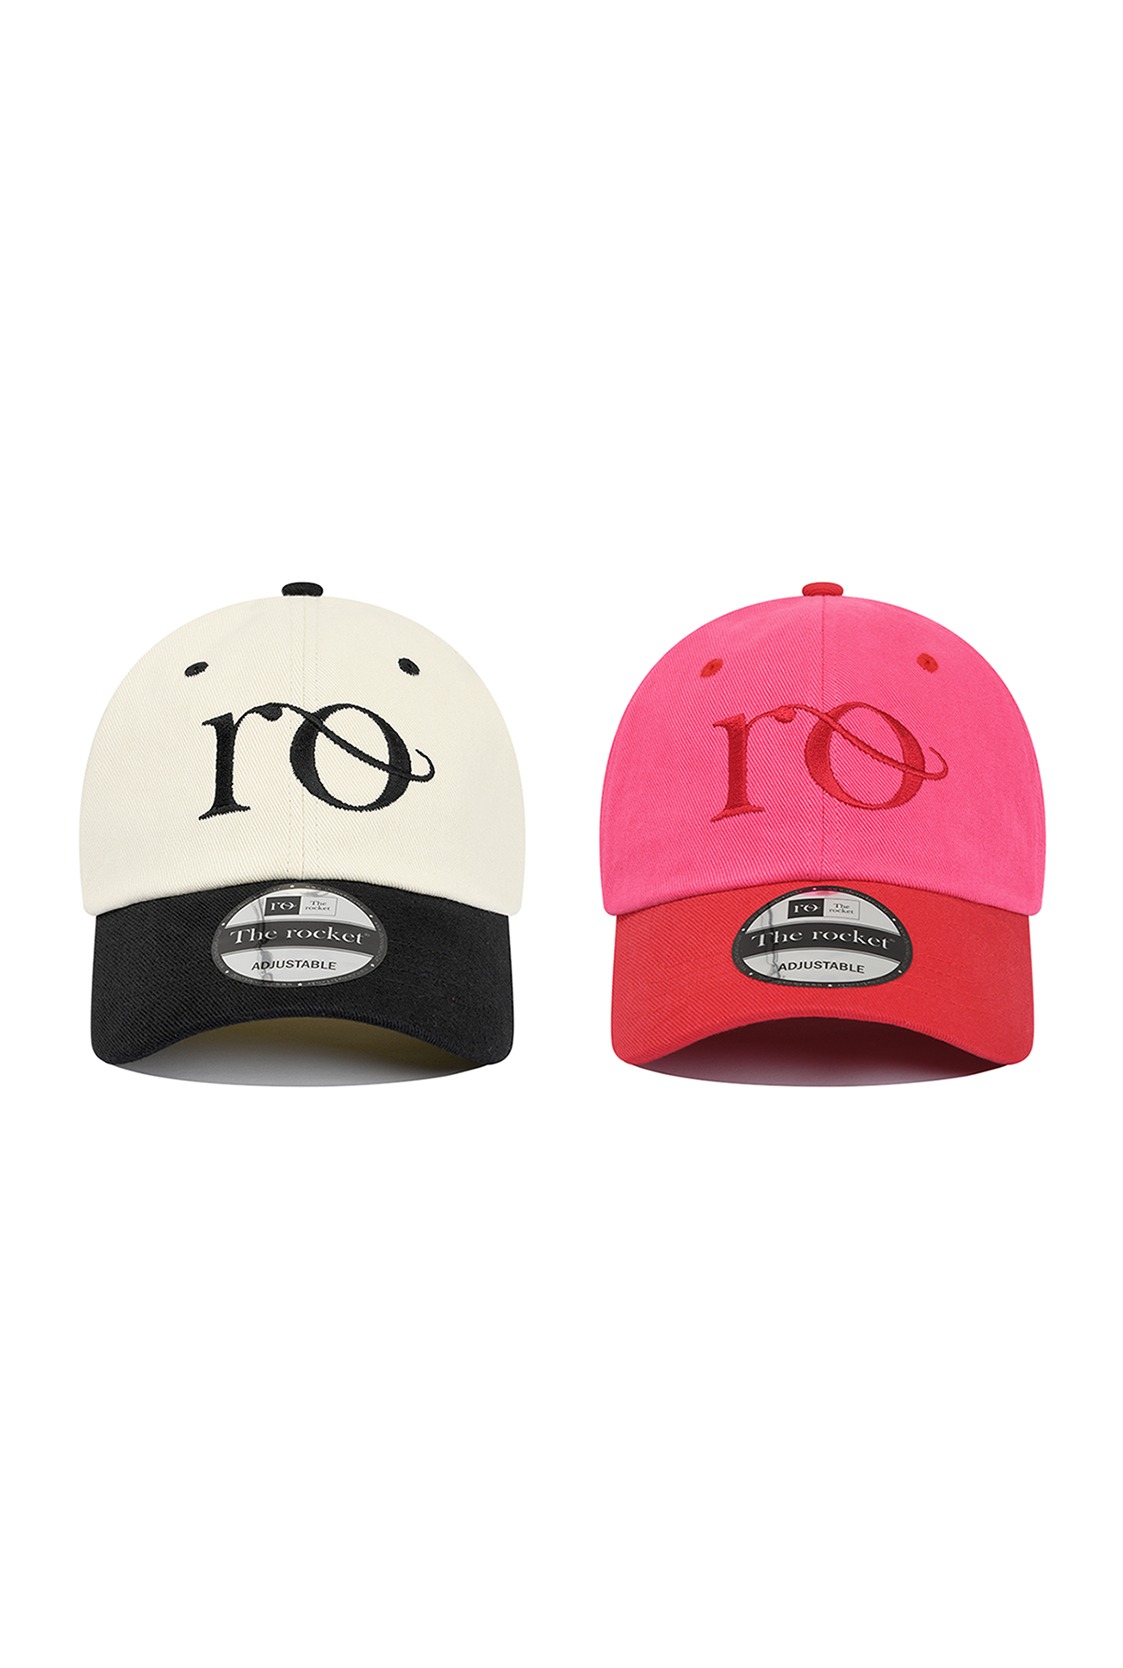 R CONTRAST RO LOGO BALL CAP [2colors]